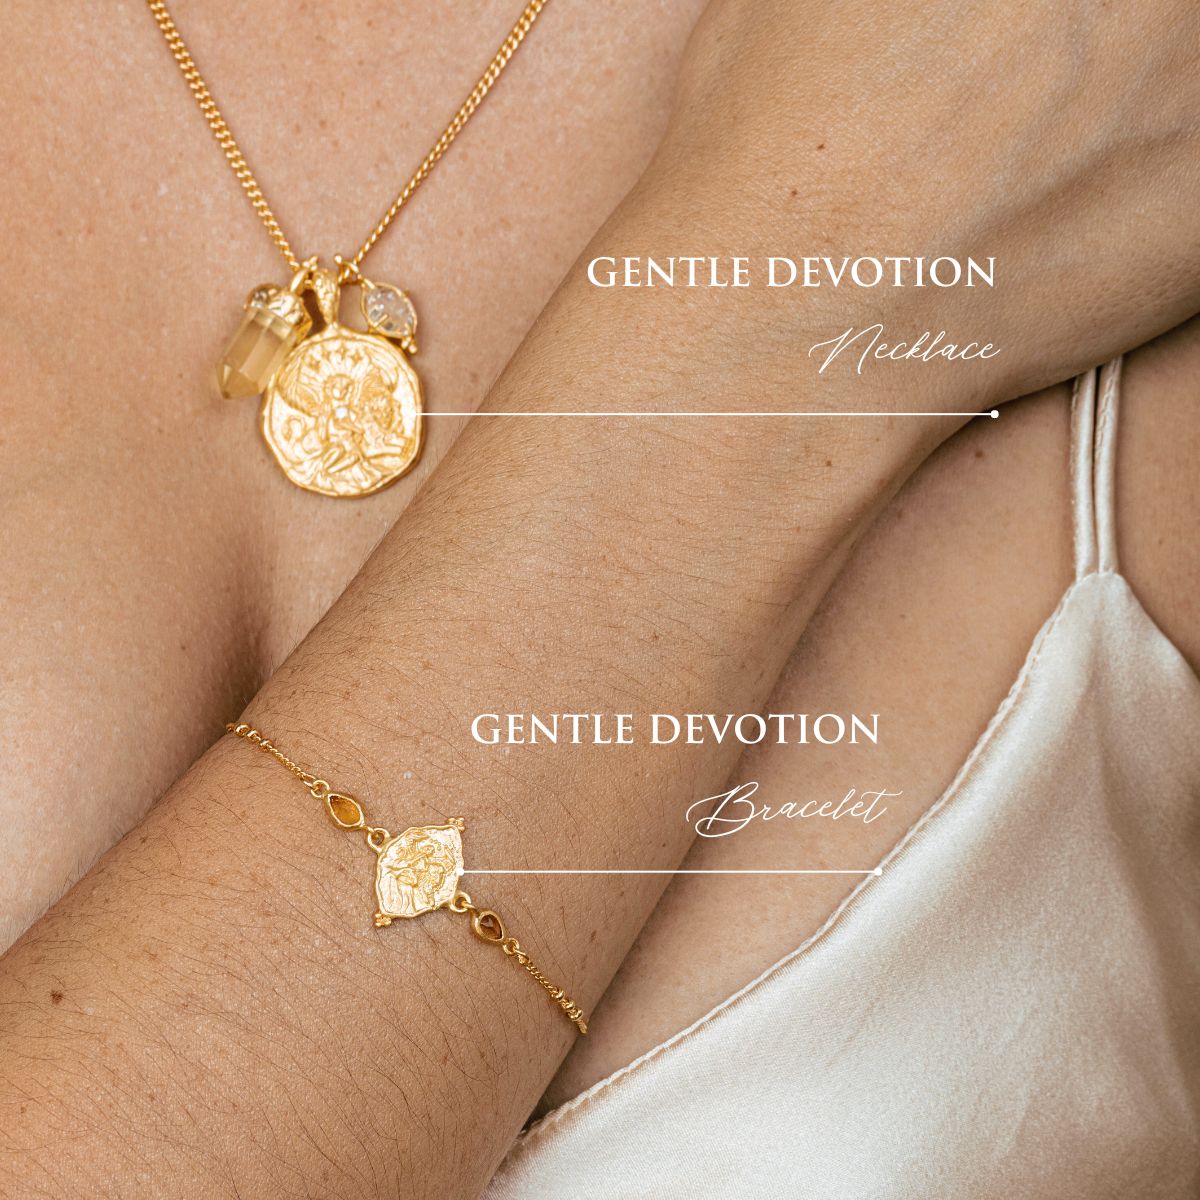 Gentle devotion necklace